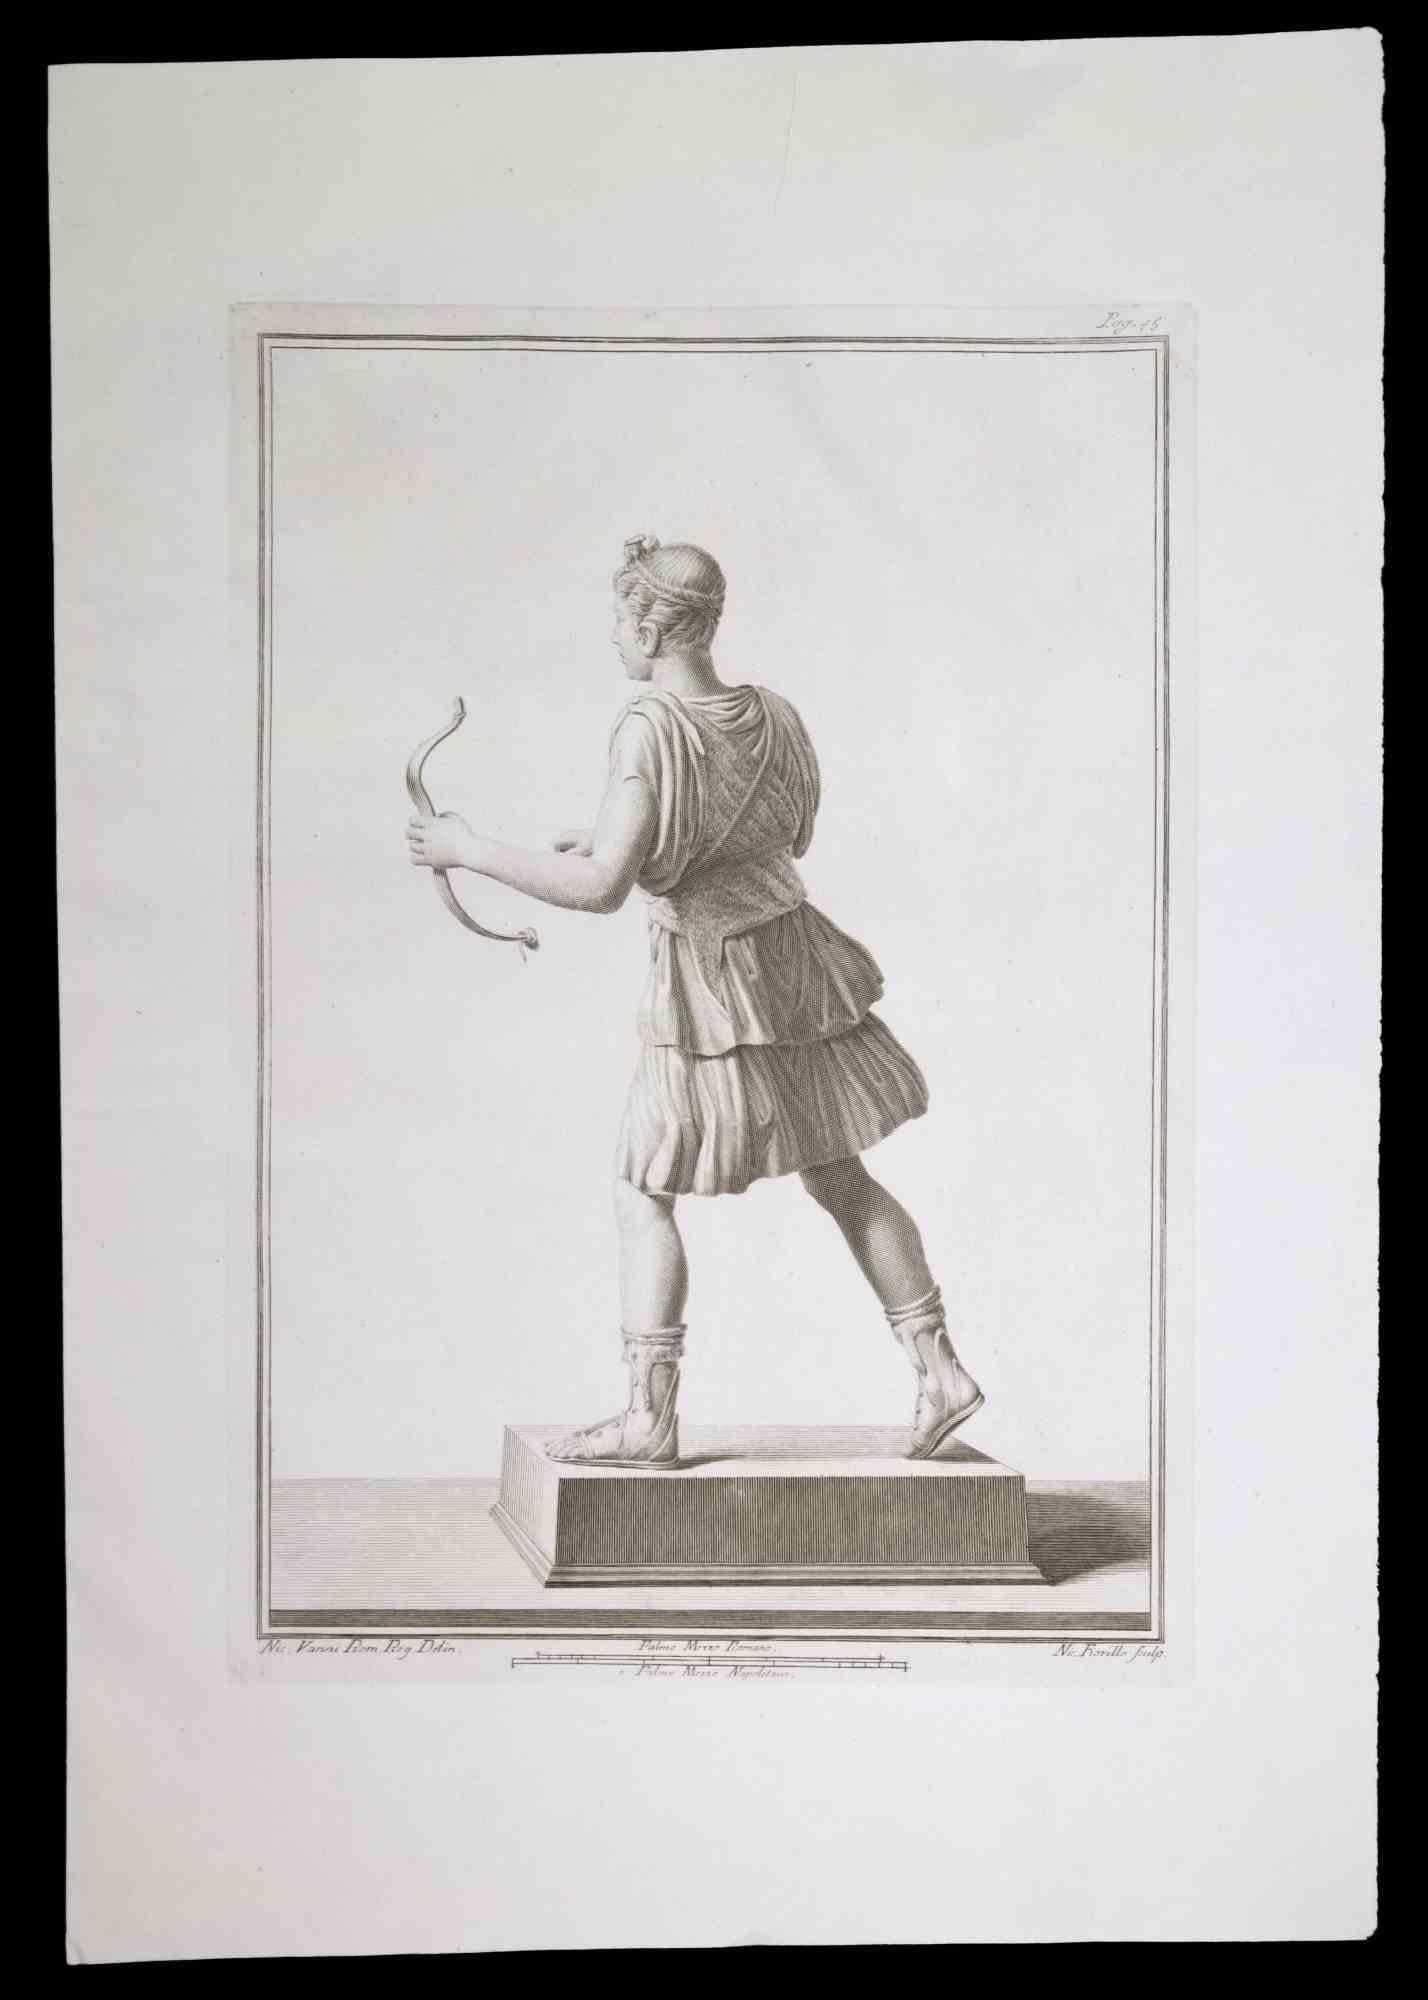 Antike römische Statue, aus der Serie "Antiquitäten von Herculaneum", ist eine Originalradierung auf Papier von Nicola Fiorillo aus dem 18.

Signiert auf der Platte, unten rechts.

Guter Zustand mit leichten Falten.

Die Radierung gehört zu der